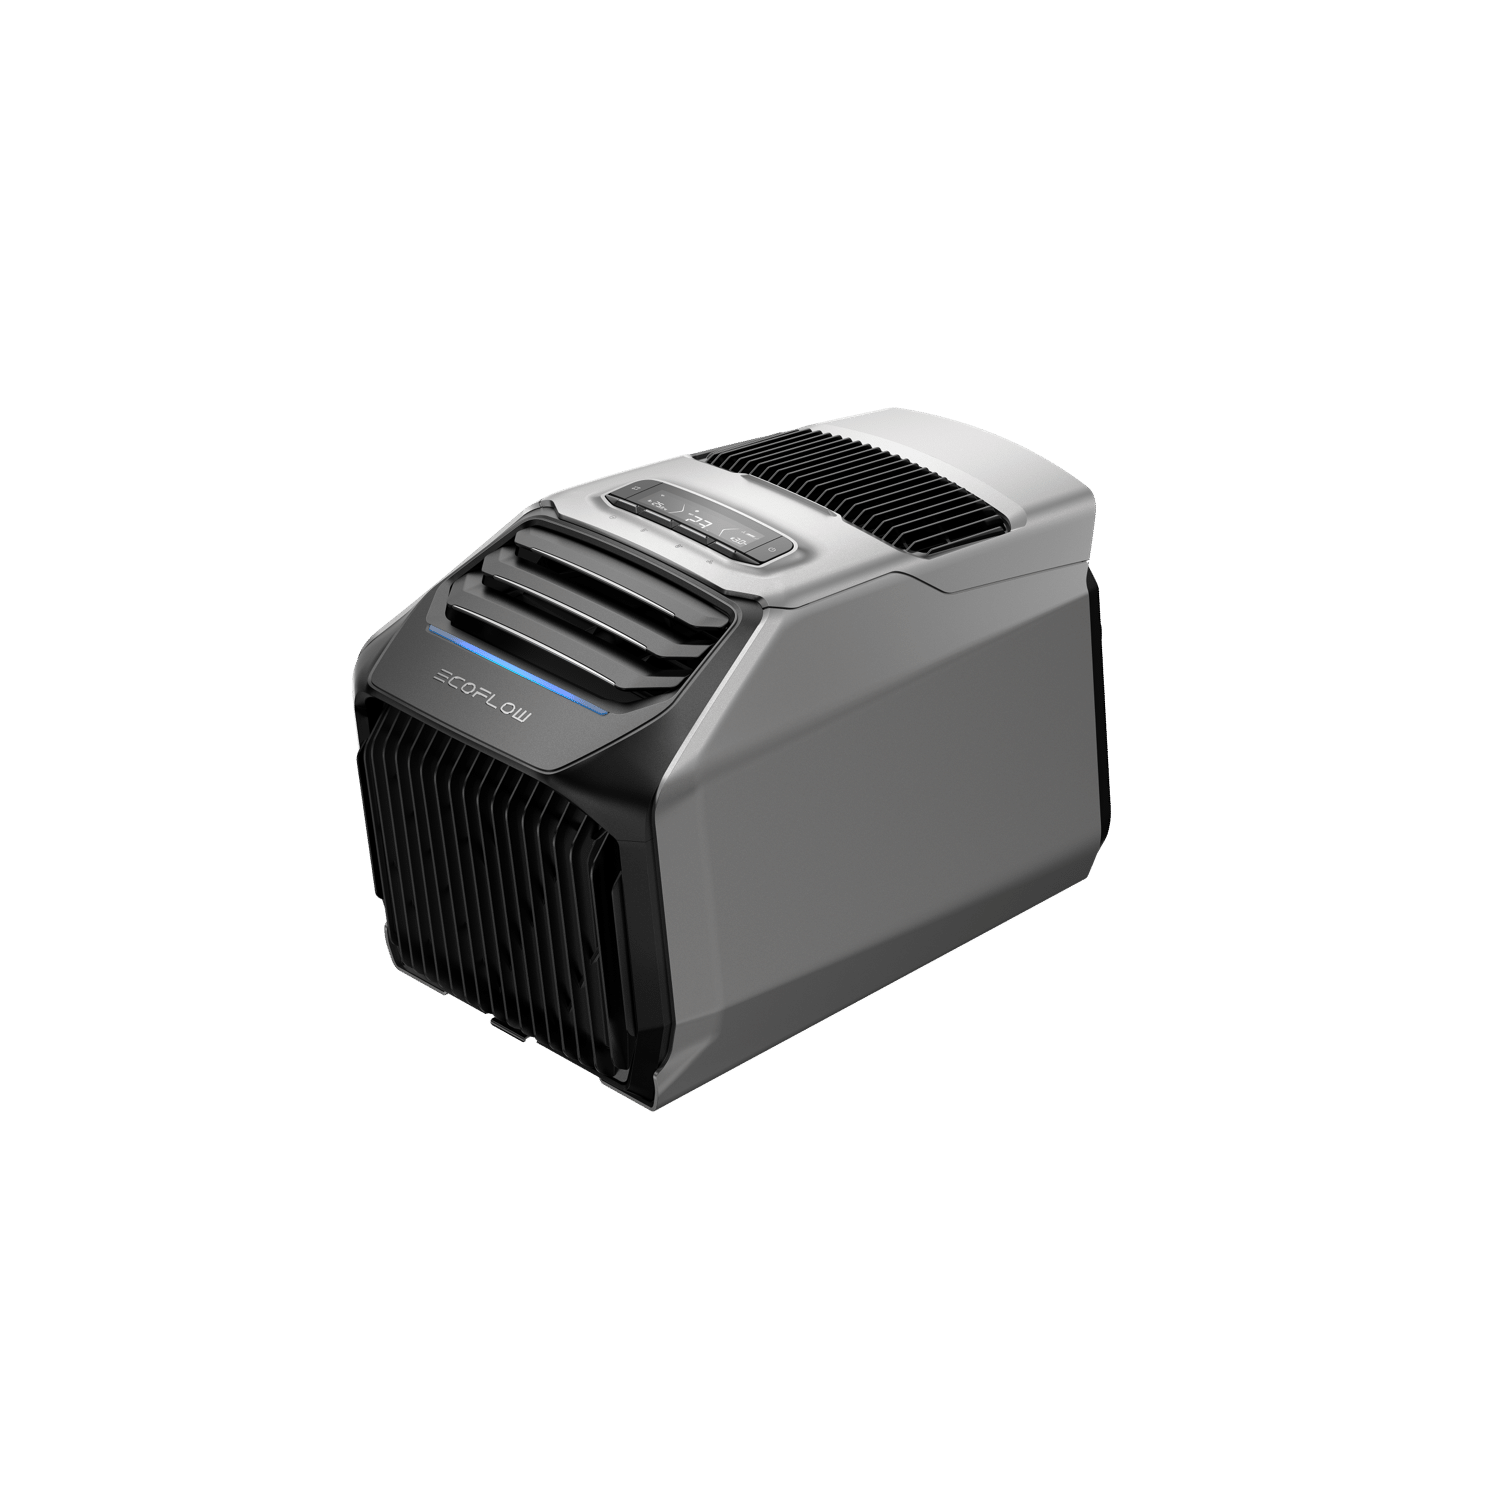 WAVE 2 Portable Air Conditioner